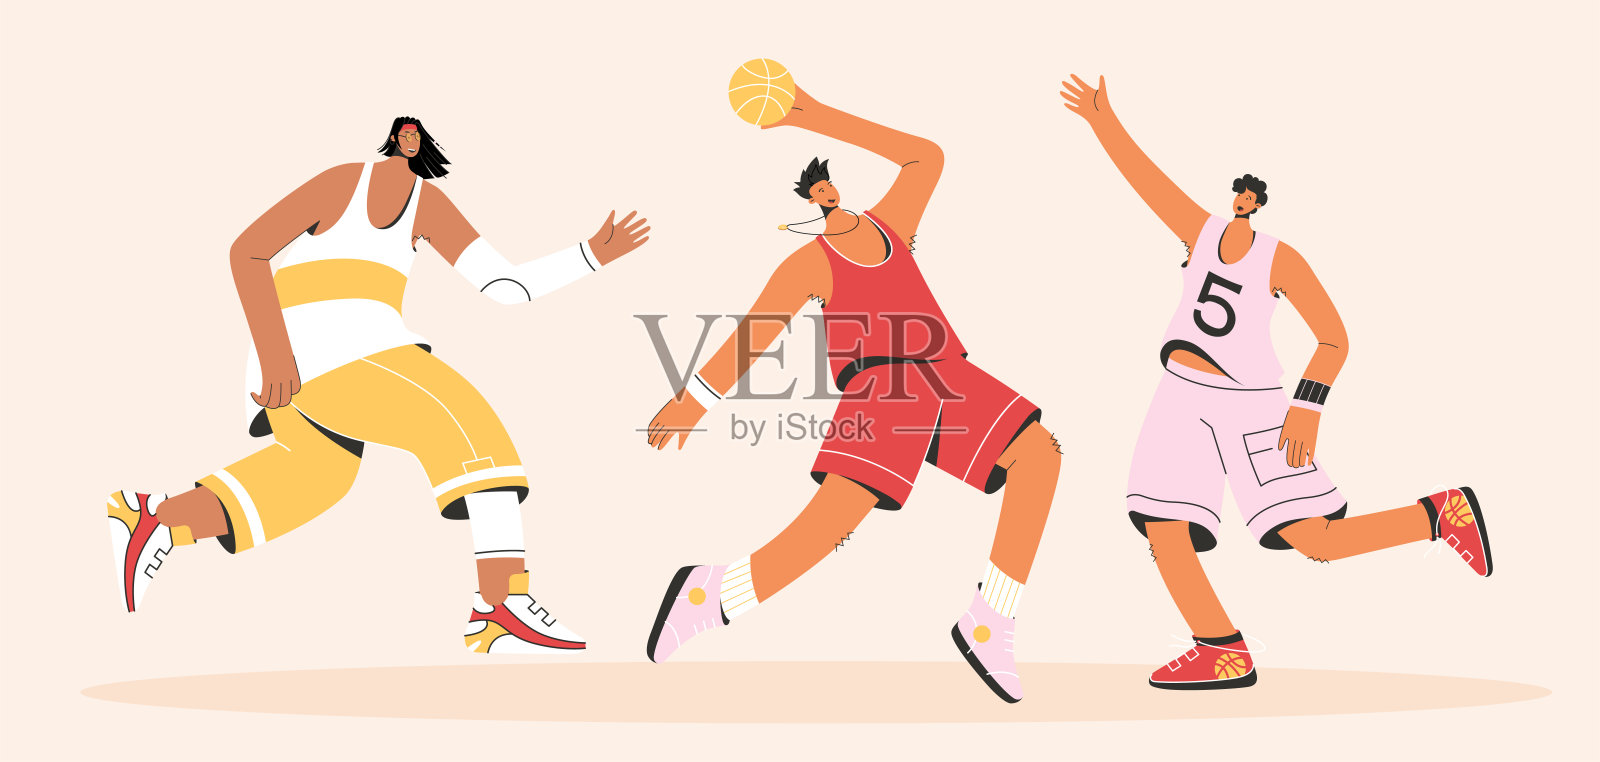 穿着制服打街球的篮球运动员插画图片素材